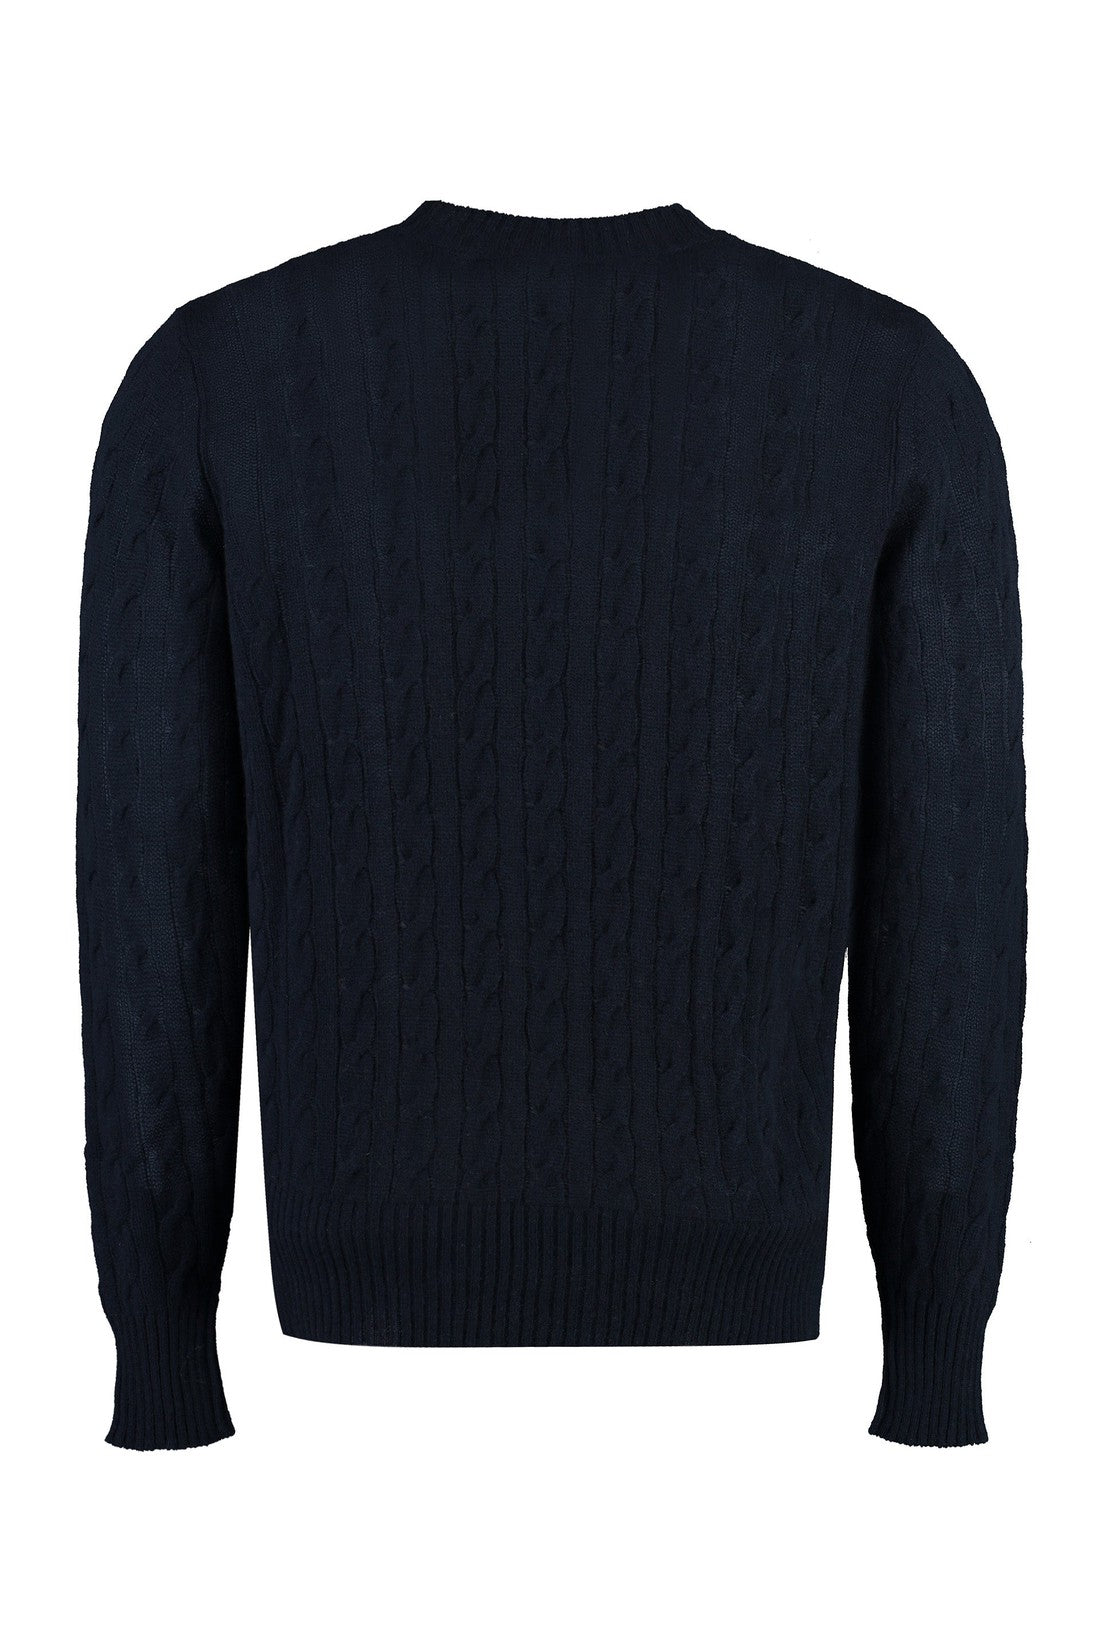 Etro-OUTLET-SALE-Cashmere sweater-ARCHIVIST